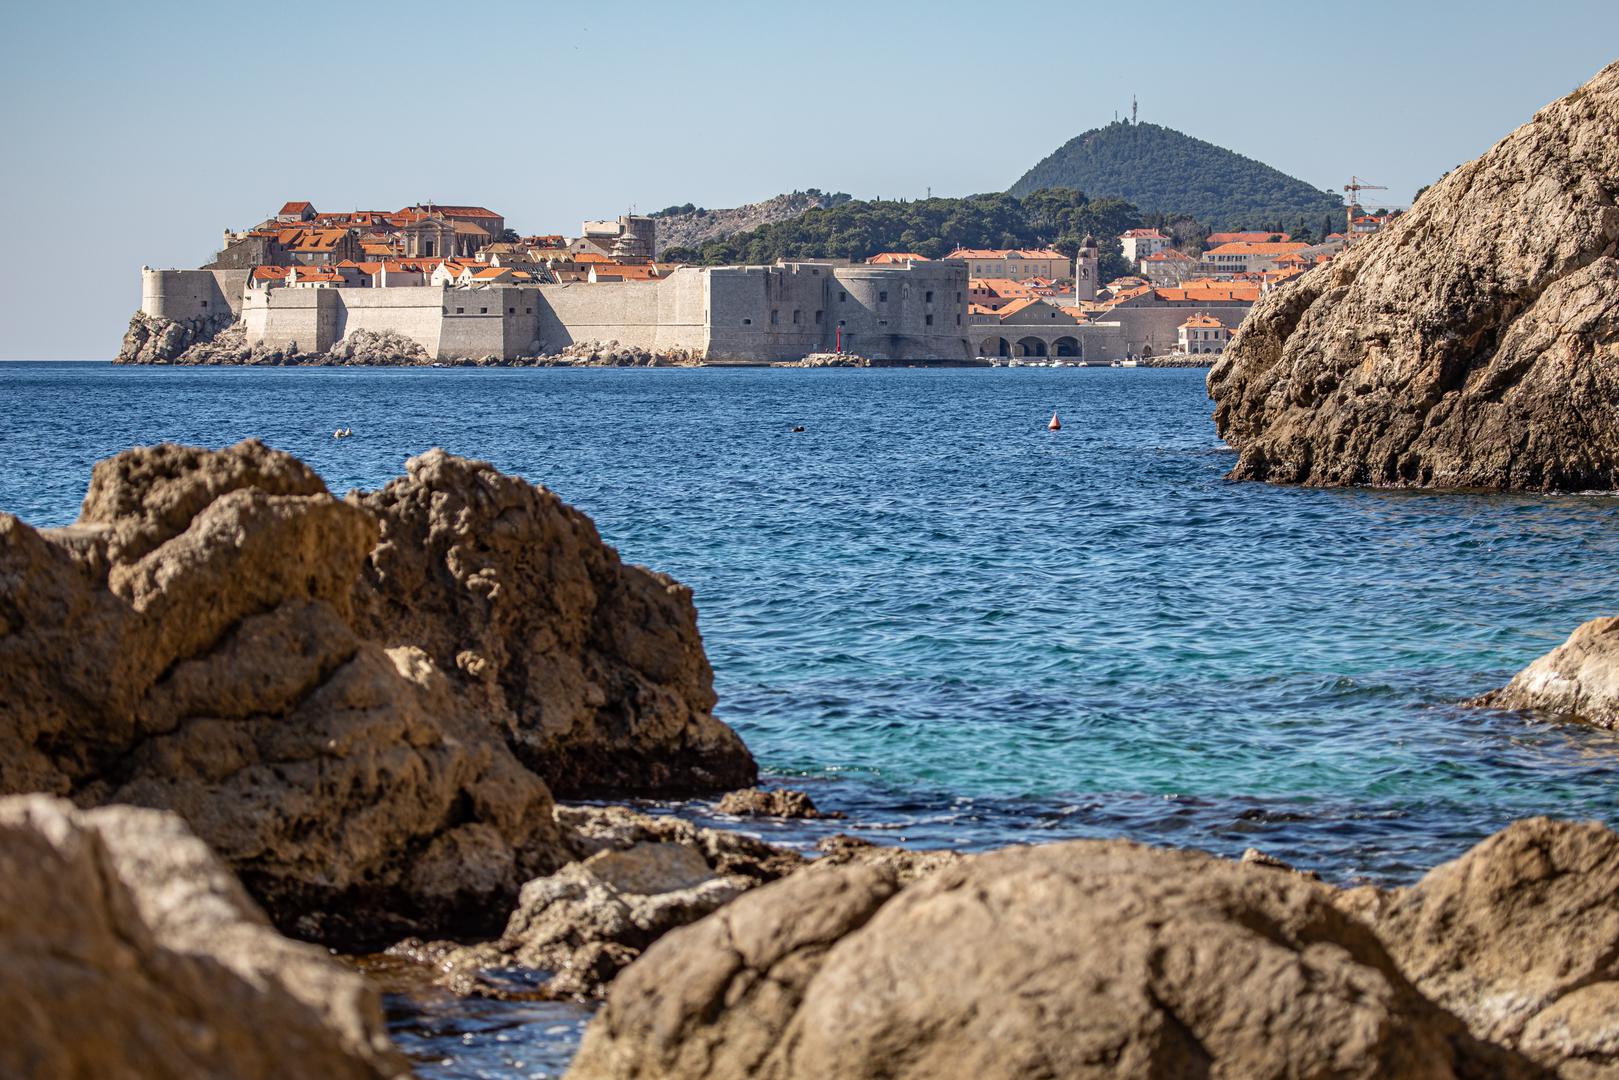 3. Sveti Jakov, Dubrovnik: Udaljen je 30 minuta hoda od Starog grada i pješačenja niz - i natrag - 160 kamenih stuba, ali Sveti Jakov vam daje malo prostora za disanje od užurbanosti glavne dubrovačke plaže. Dobivate veličanstven pogled na Stari grad ograđen zidinama, koji je još spektakularniji kako sunce zalazi. 